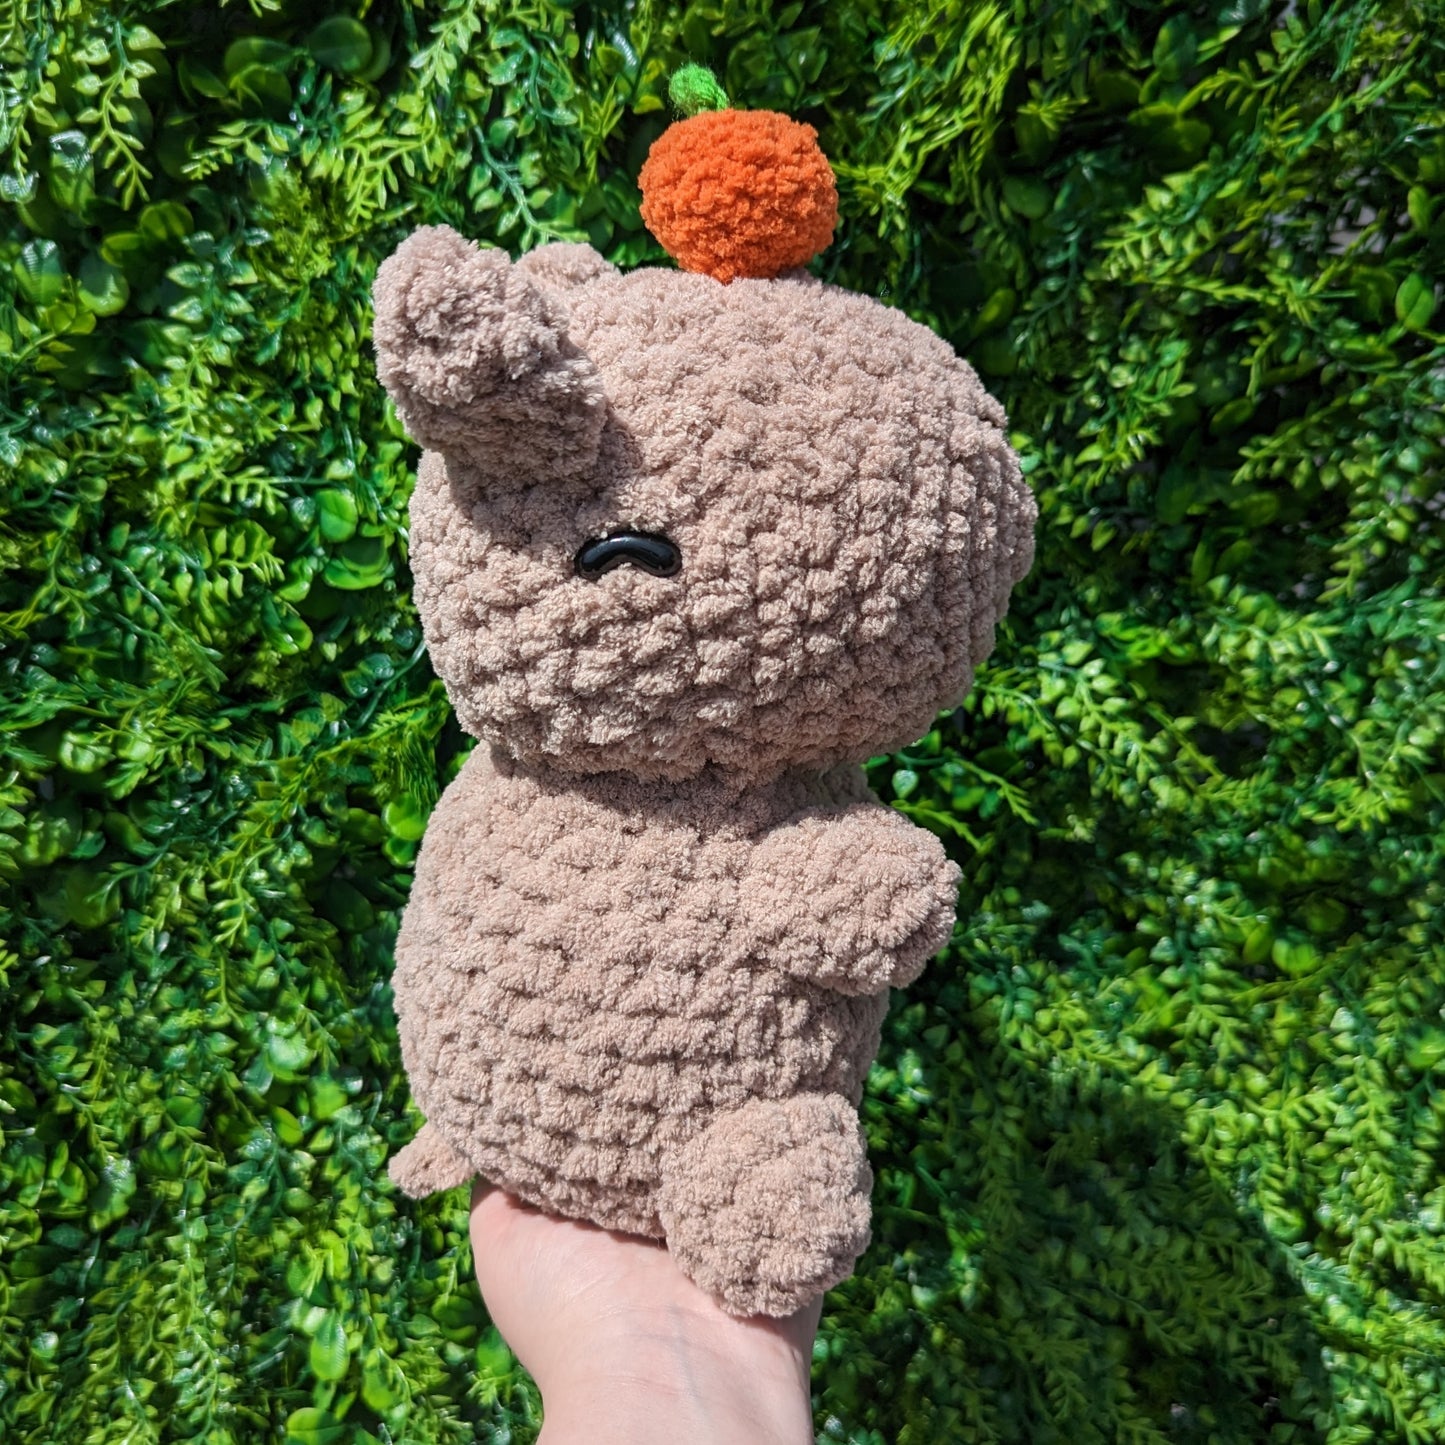 Jumbo Fuzzy Sitting Capybara with Orange Crochet Plushie [Archived]